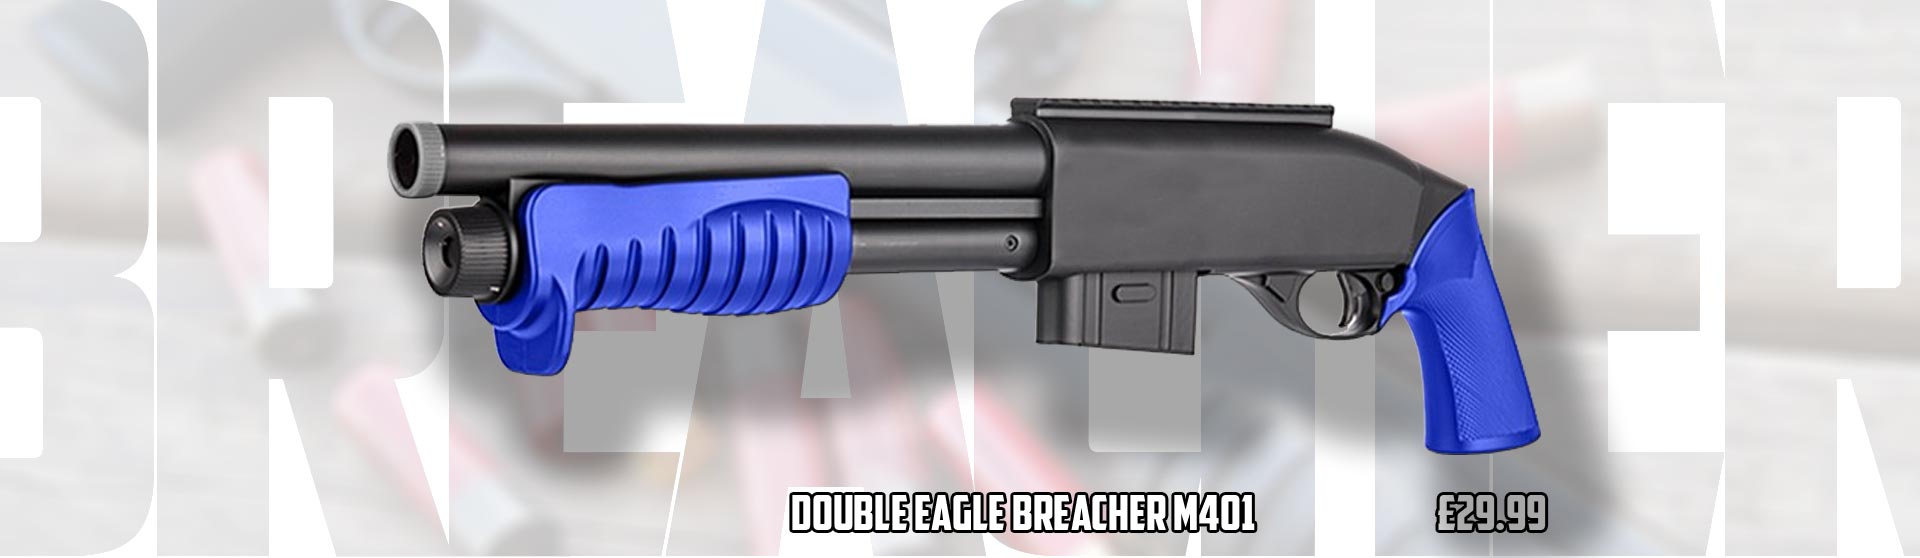 Double Eagle M401 Breach Shotgun Airsoft BB Gun